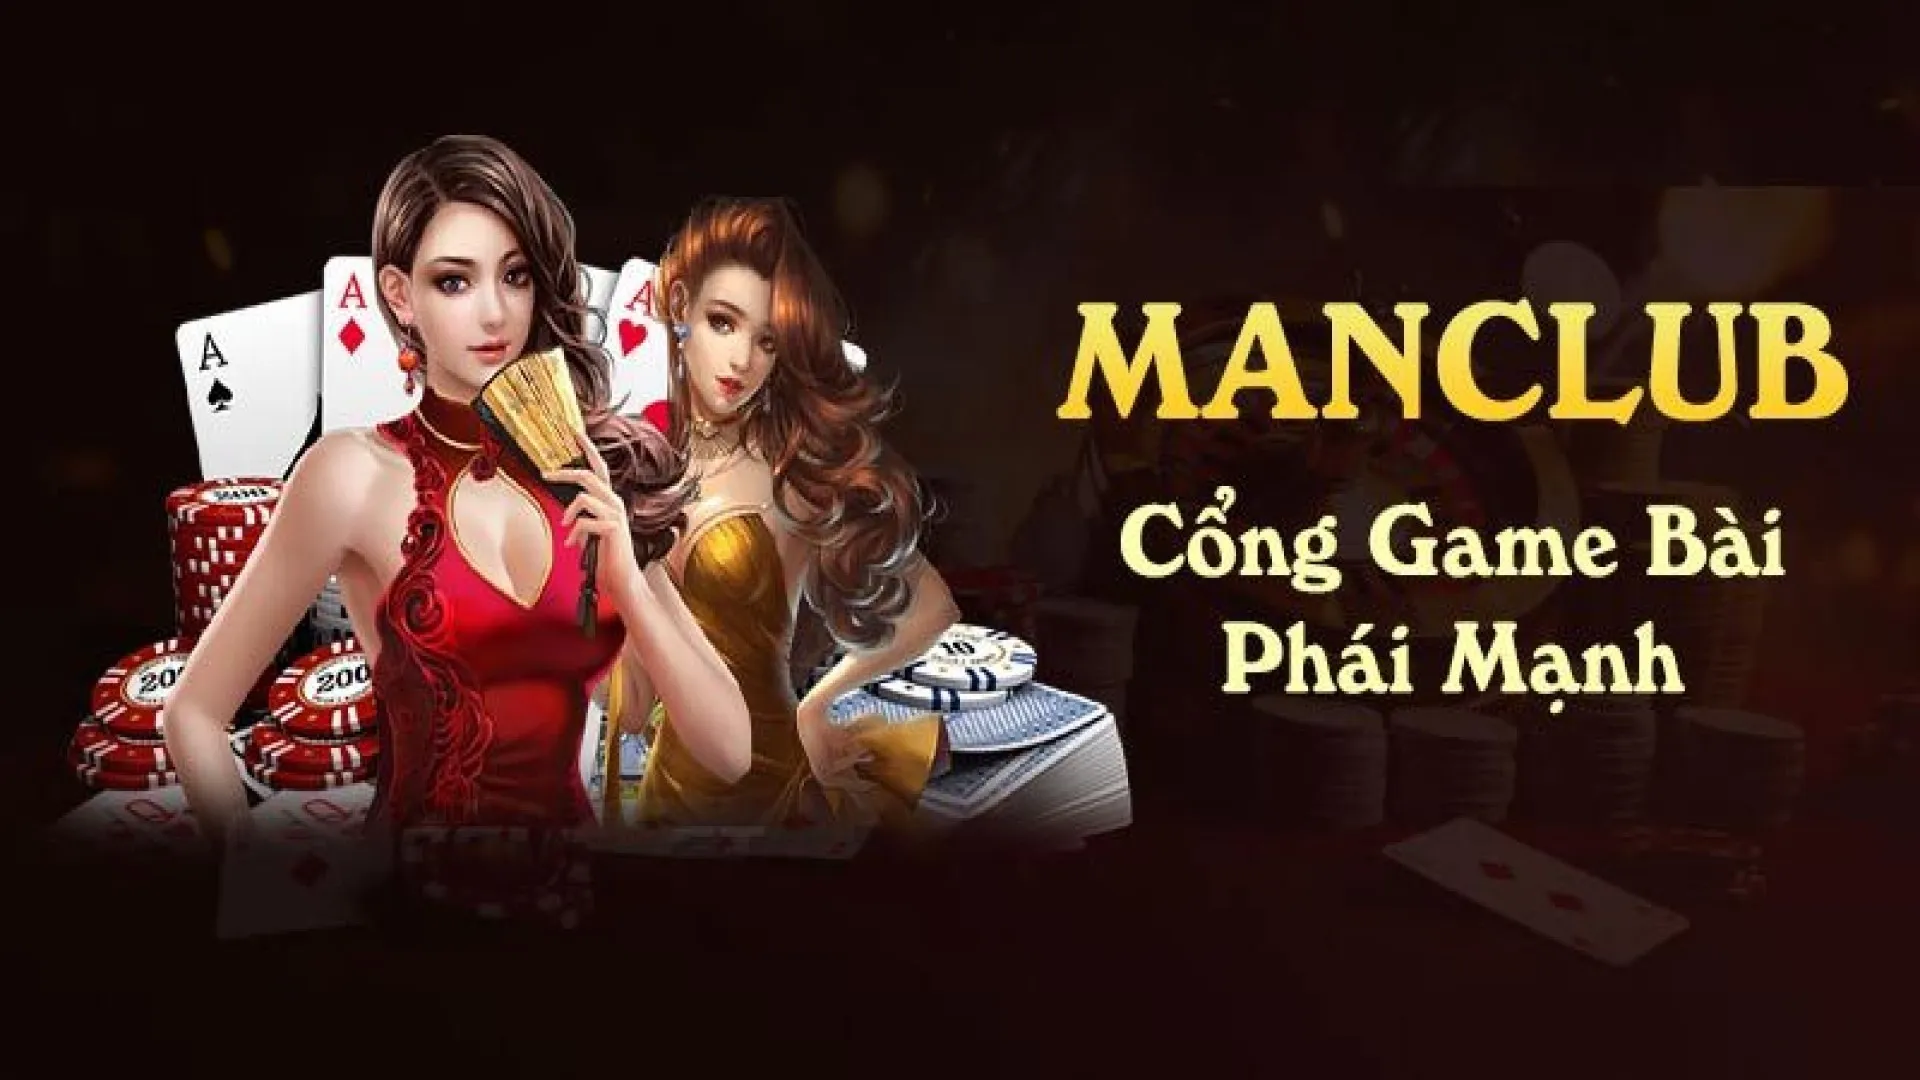 Manclub - Nơi hội tụ cộng đồng game thủ sành điệu